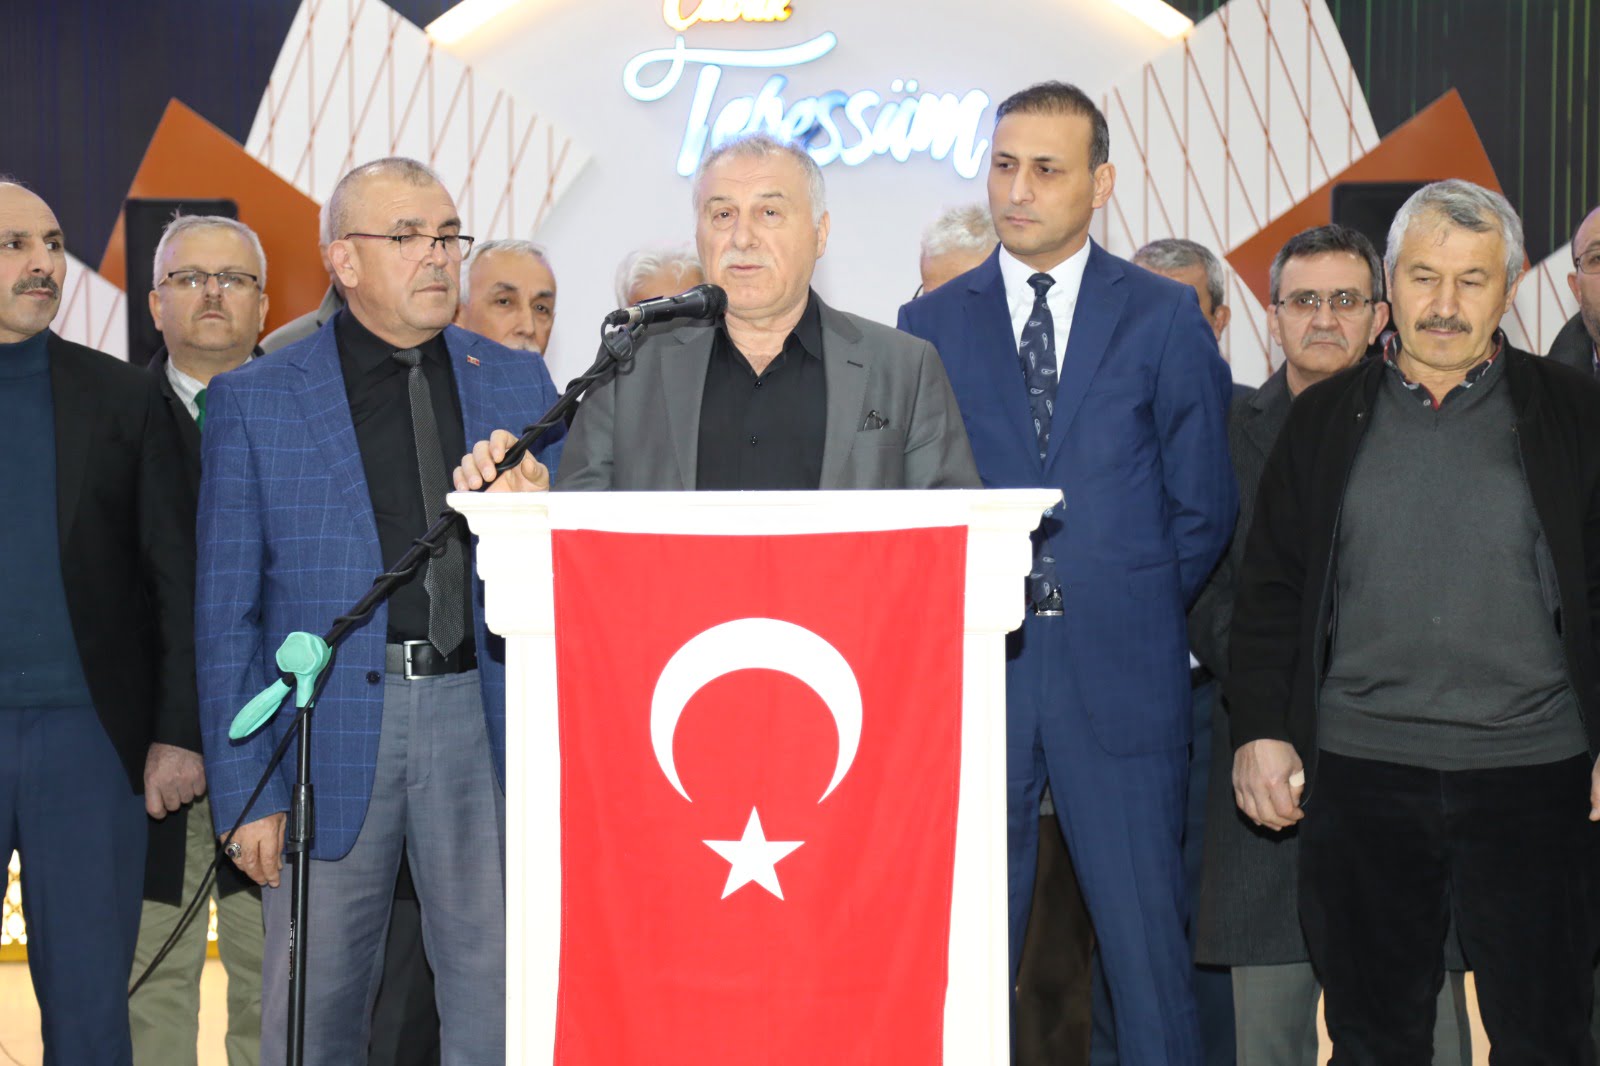 Kuzey Ankara'da 'yerel milletvekili' çağırısı büyüyor: Artık göz ardı edilmemeli 6